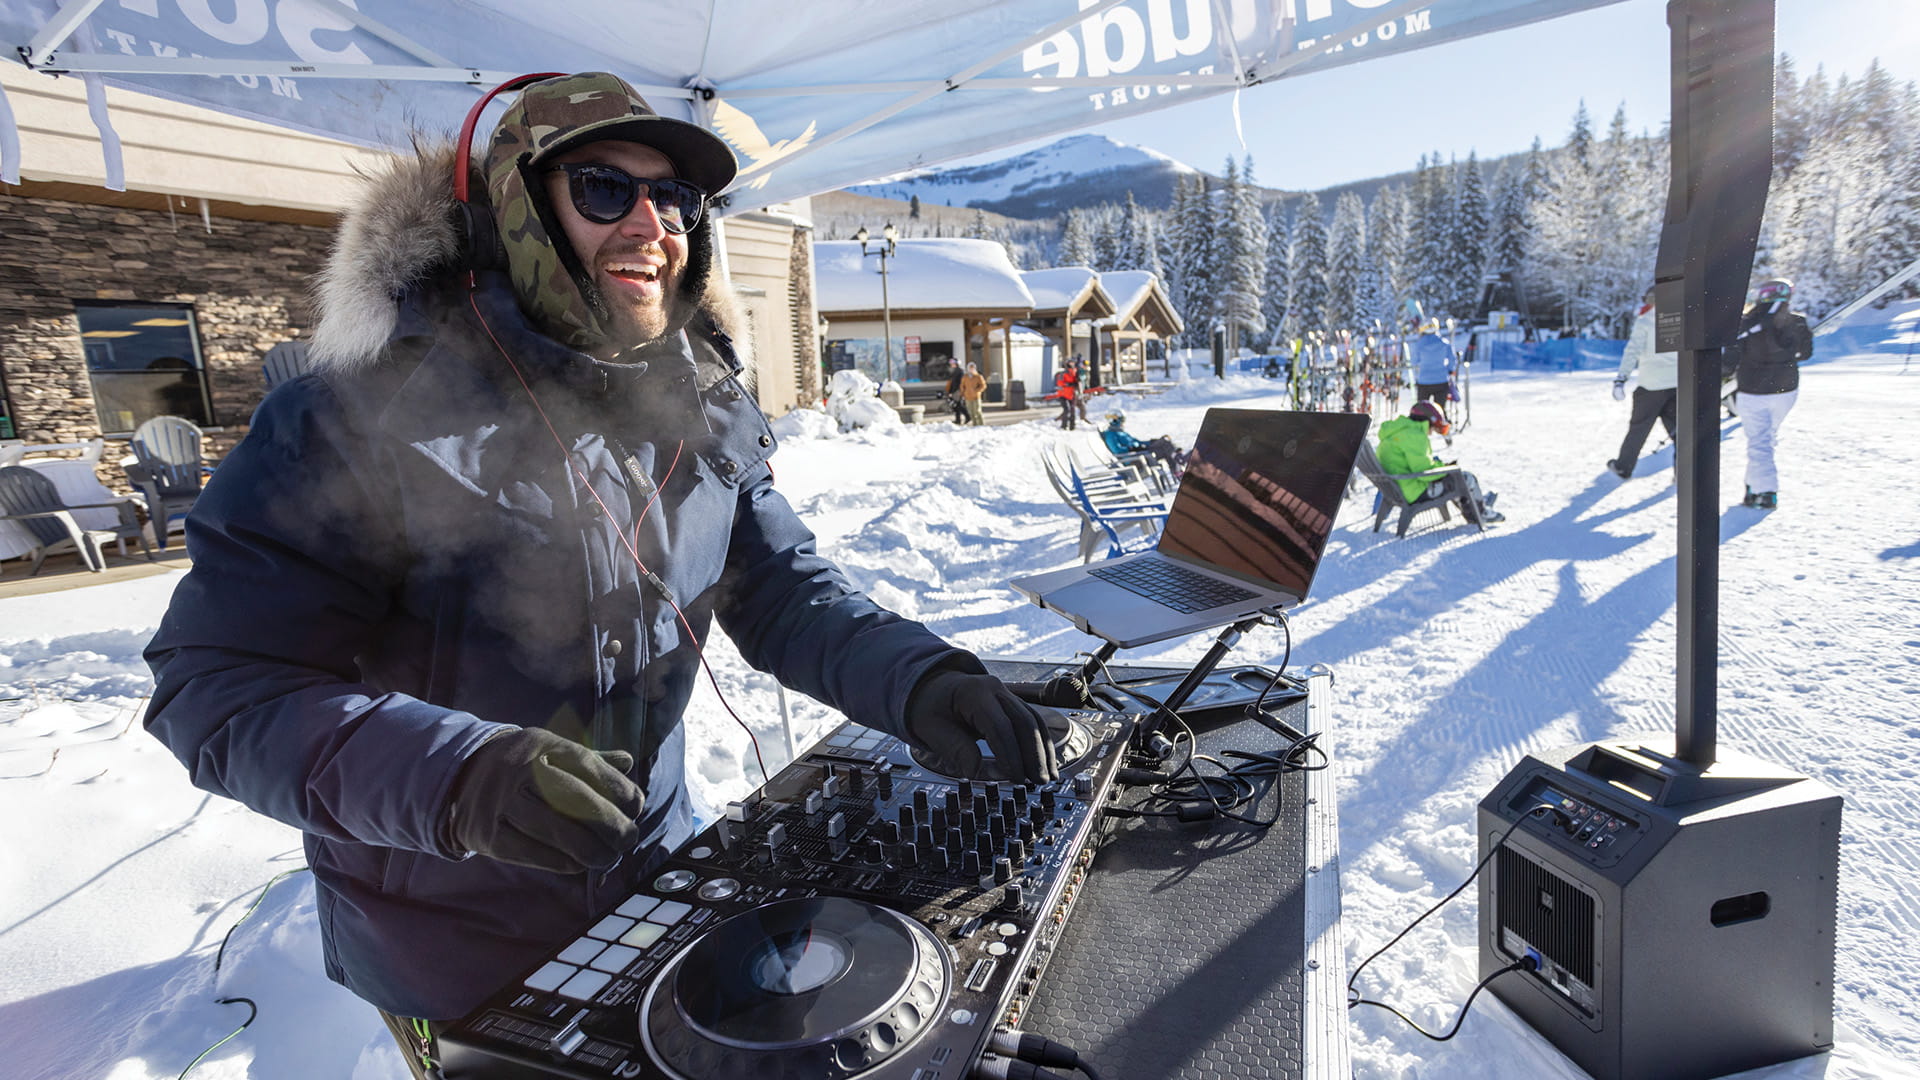 Apres Ski DJ